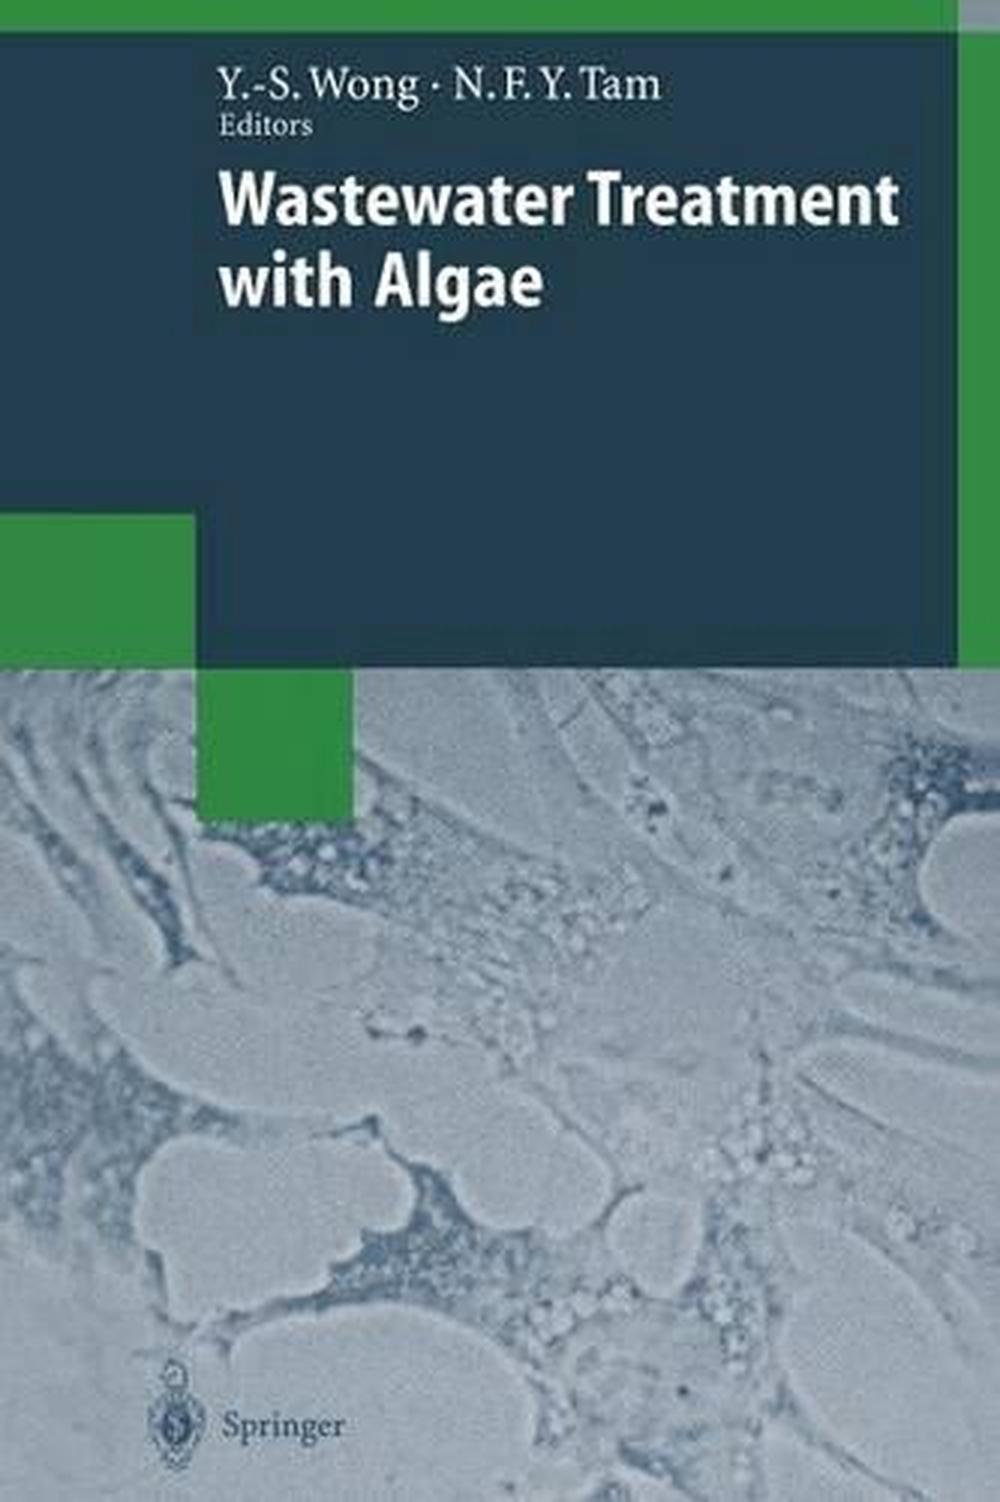 algae book by vashishta pdf